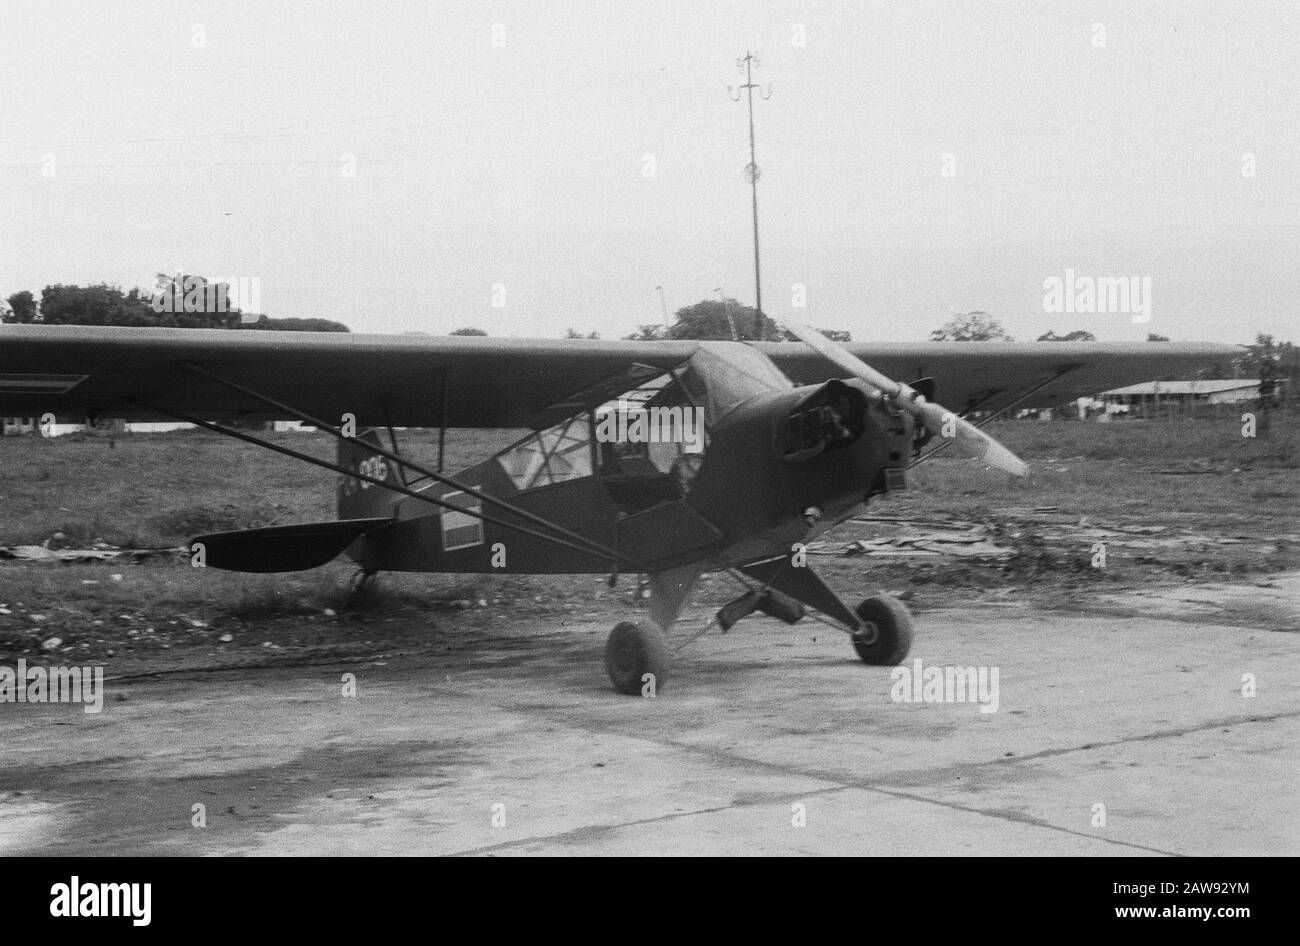 Piper Cub L-4J Grasshopper Aufklärungsflugzeug Military Aviation KNIL Anmerkung: Registrierung: PC4-006. Dieses Flugzeug wurde im Juli in die Nummer R-306 und 1950 in die indonesische Luftwaffe (AURIS) übertragen Datum: 1946 Standort: Indonesien Niederländisches Ostindien Stockfoto